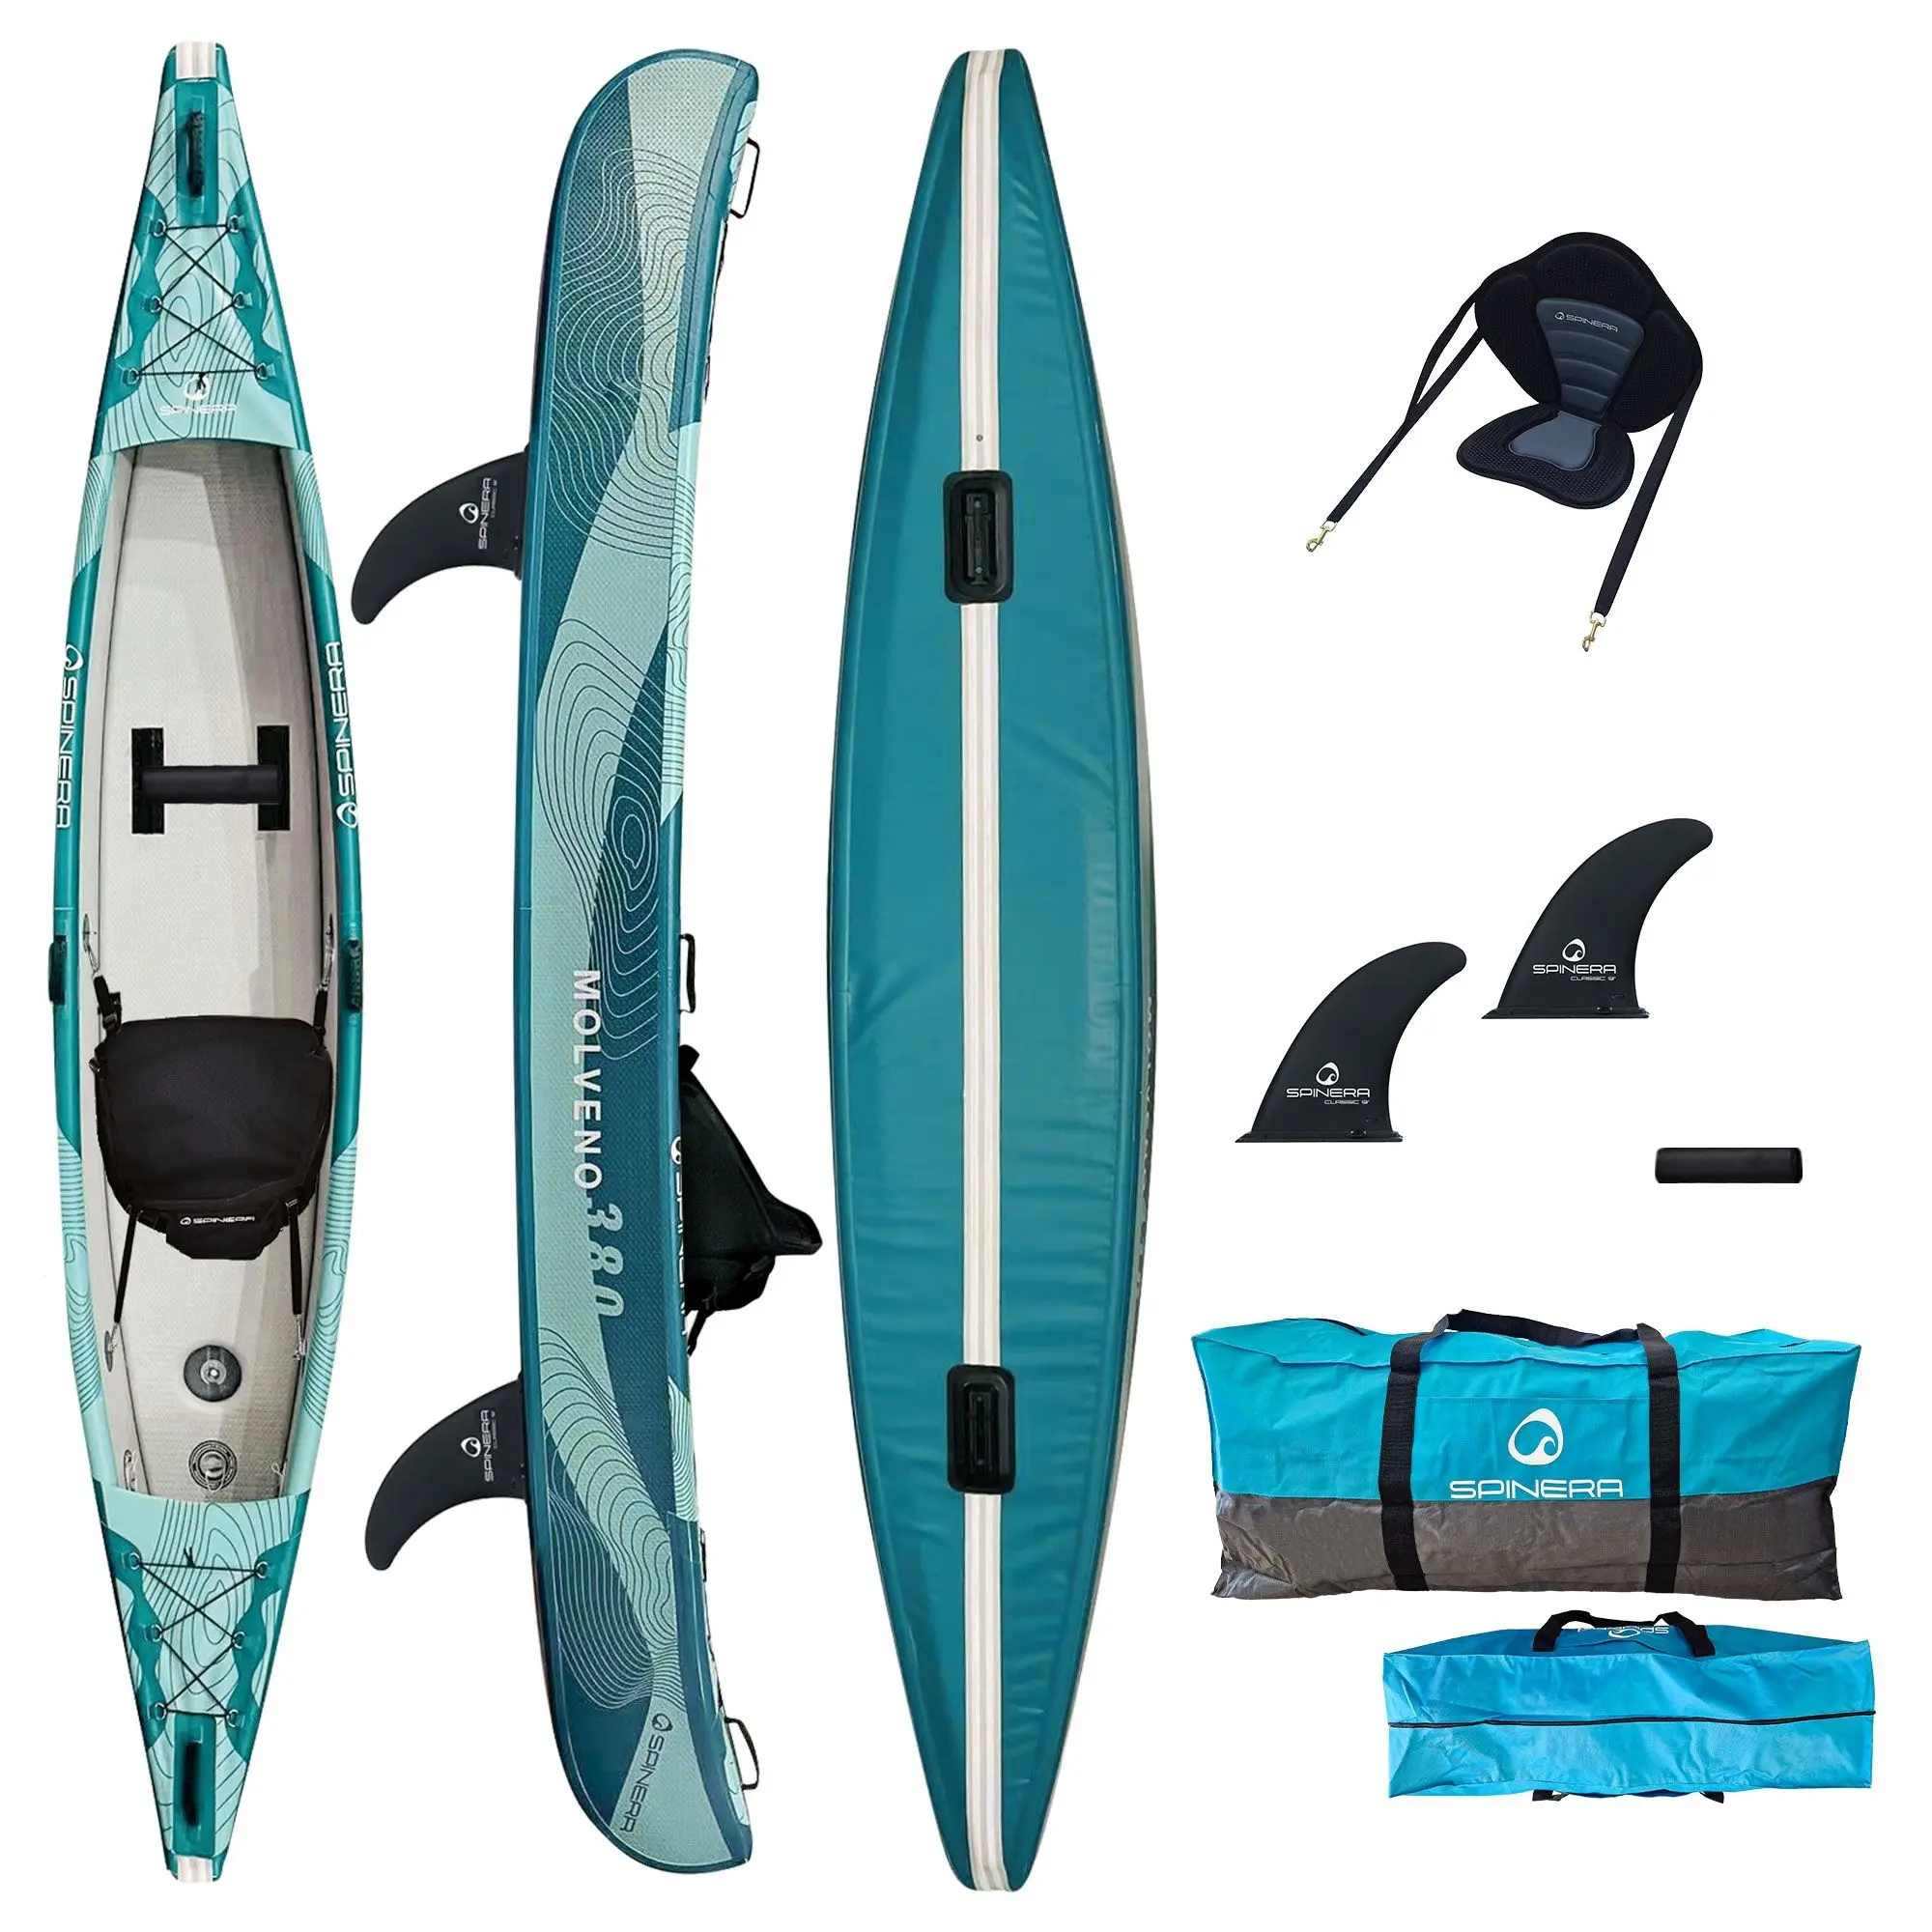 Un kayak bleu 'Molveno 380' avec divers accessoires, vu de dessus, de côté et en dessous.